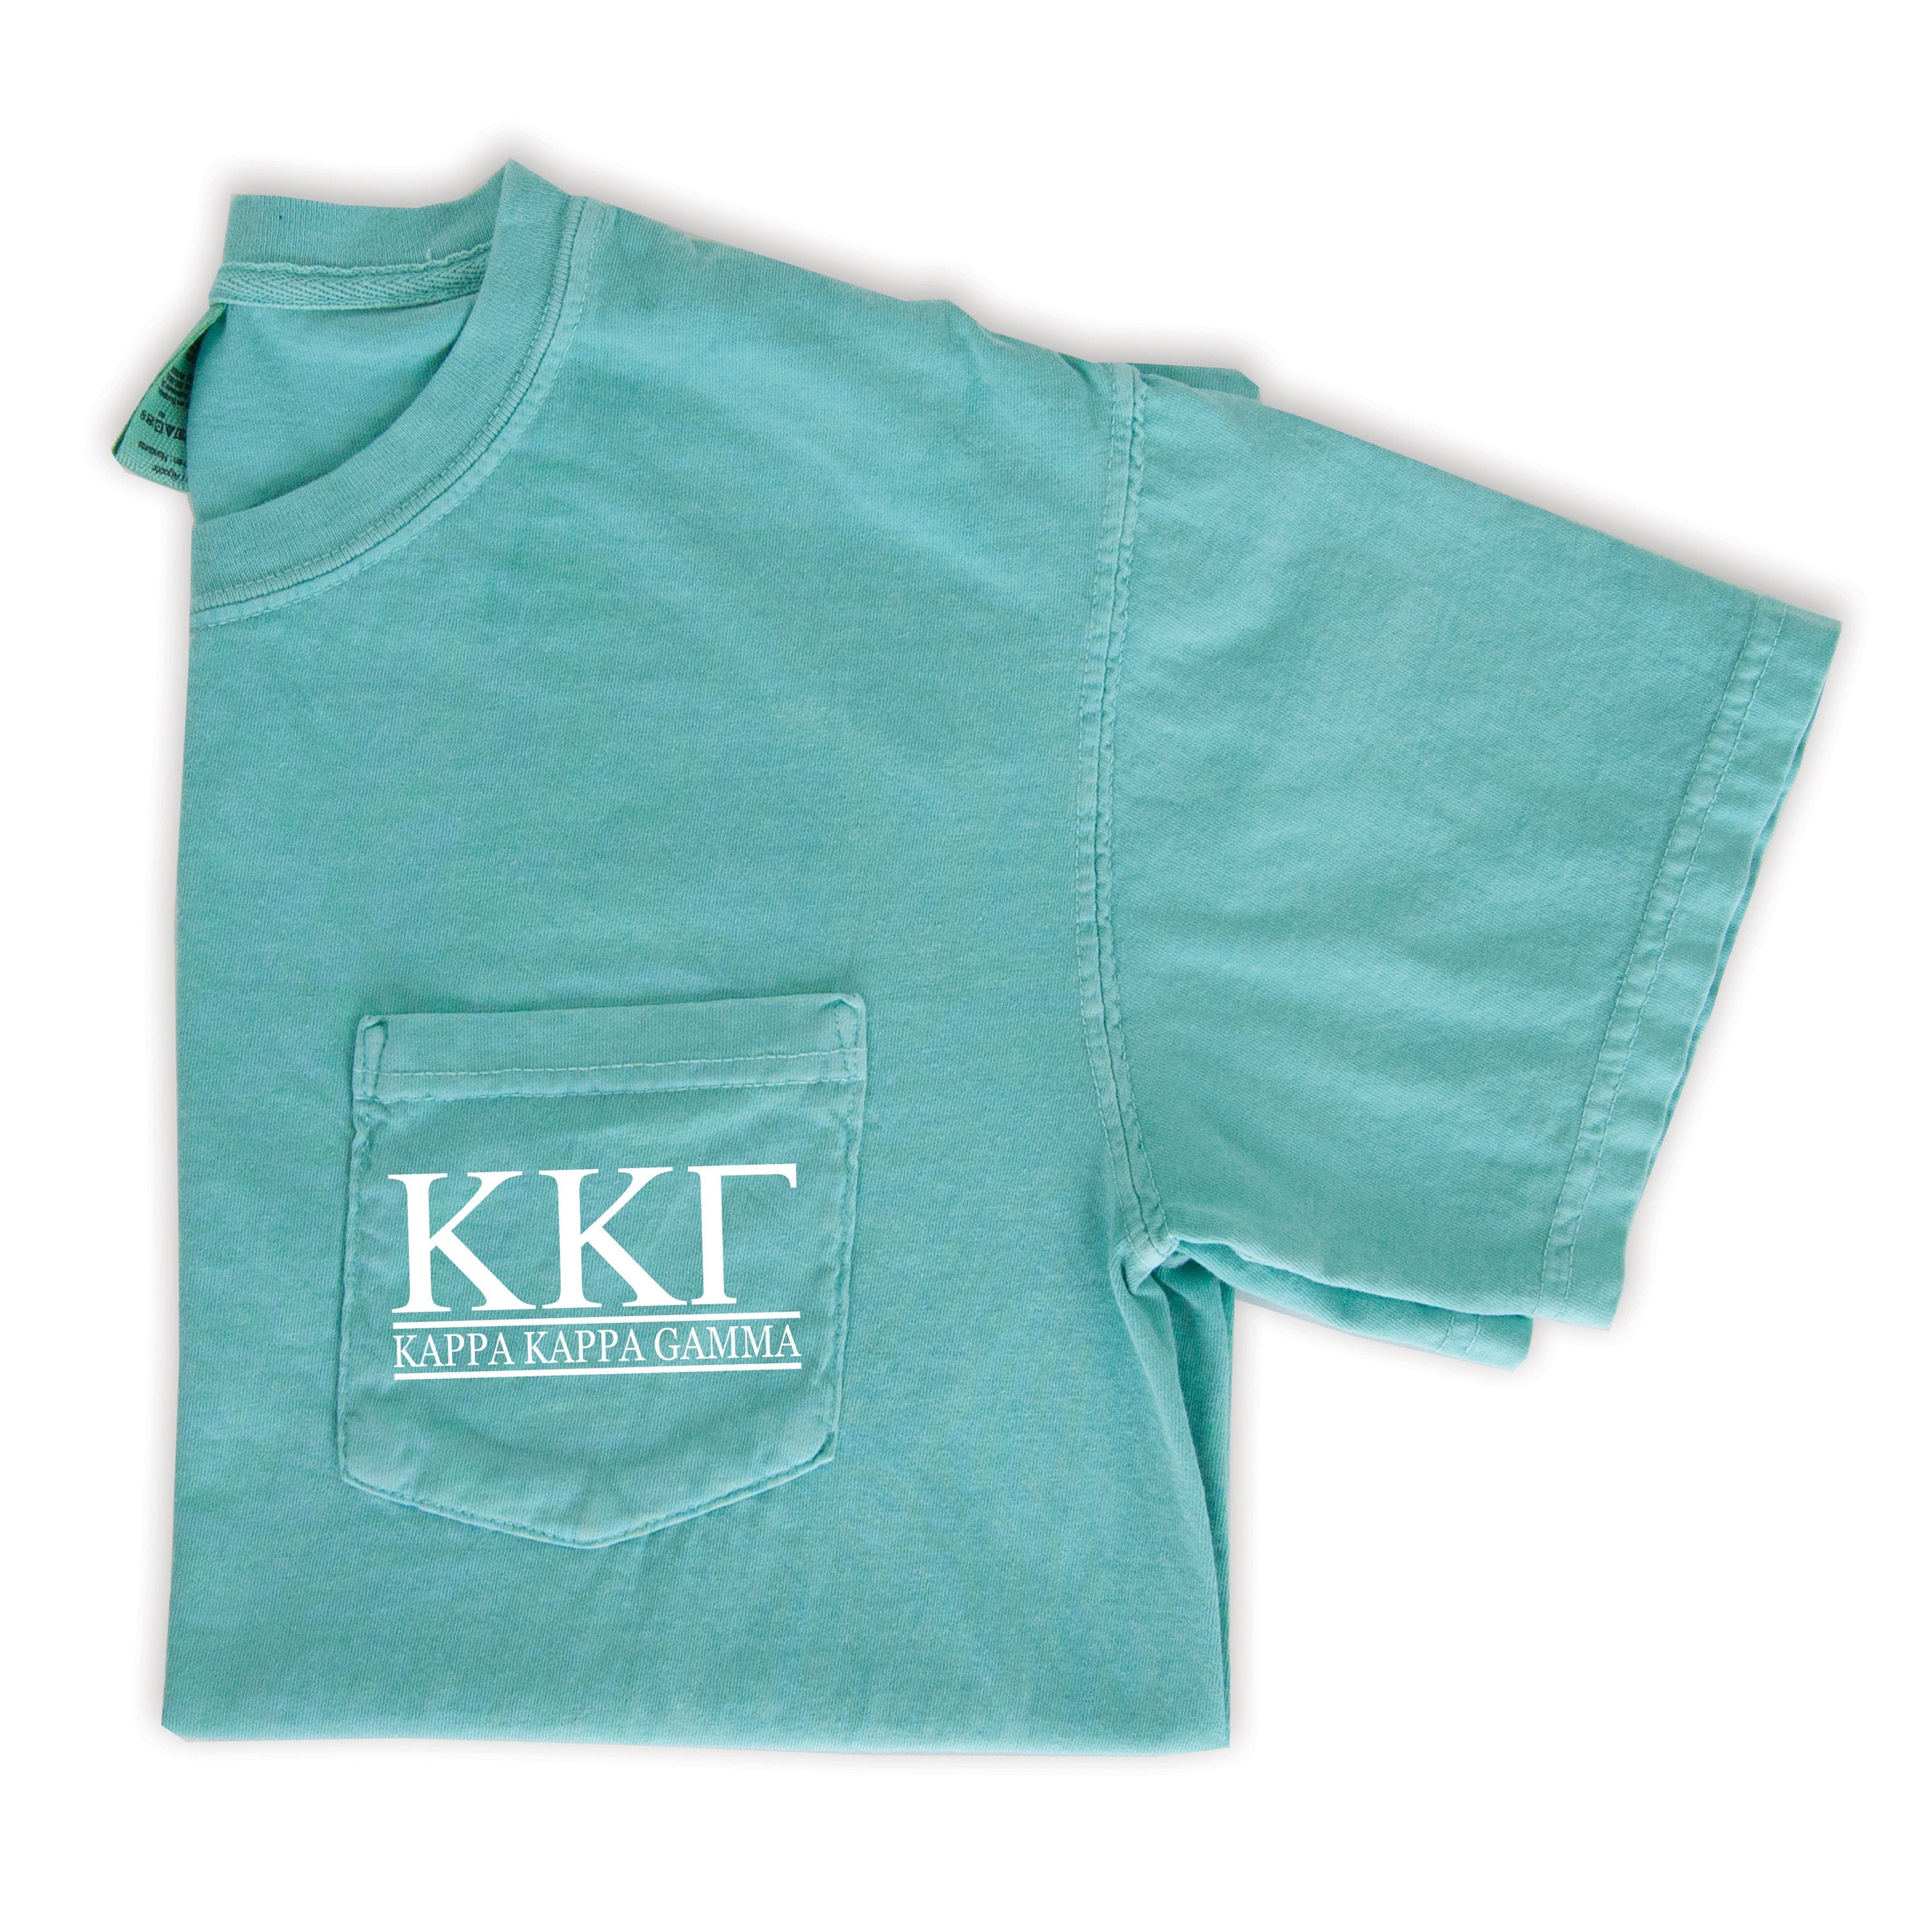 Kappa Kappa Gamma Block Letters T-Shirt - Mint - Go Greek Chic